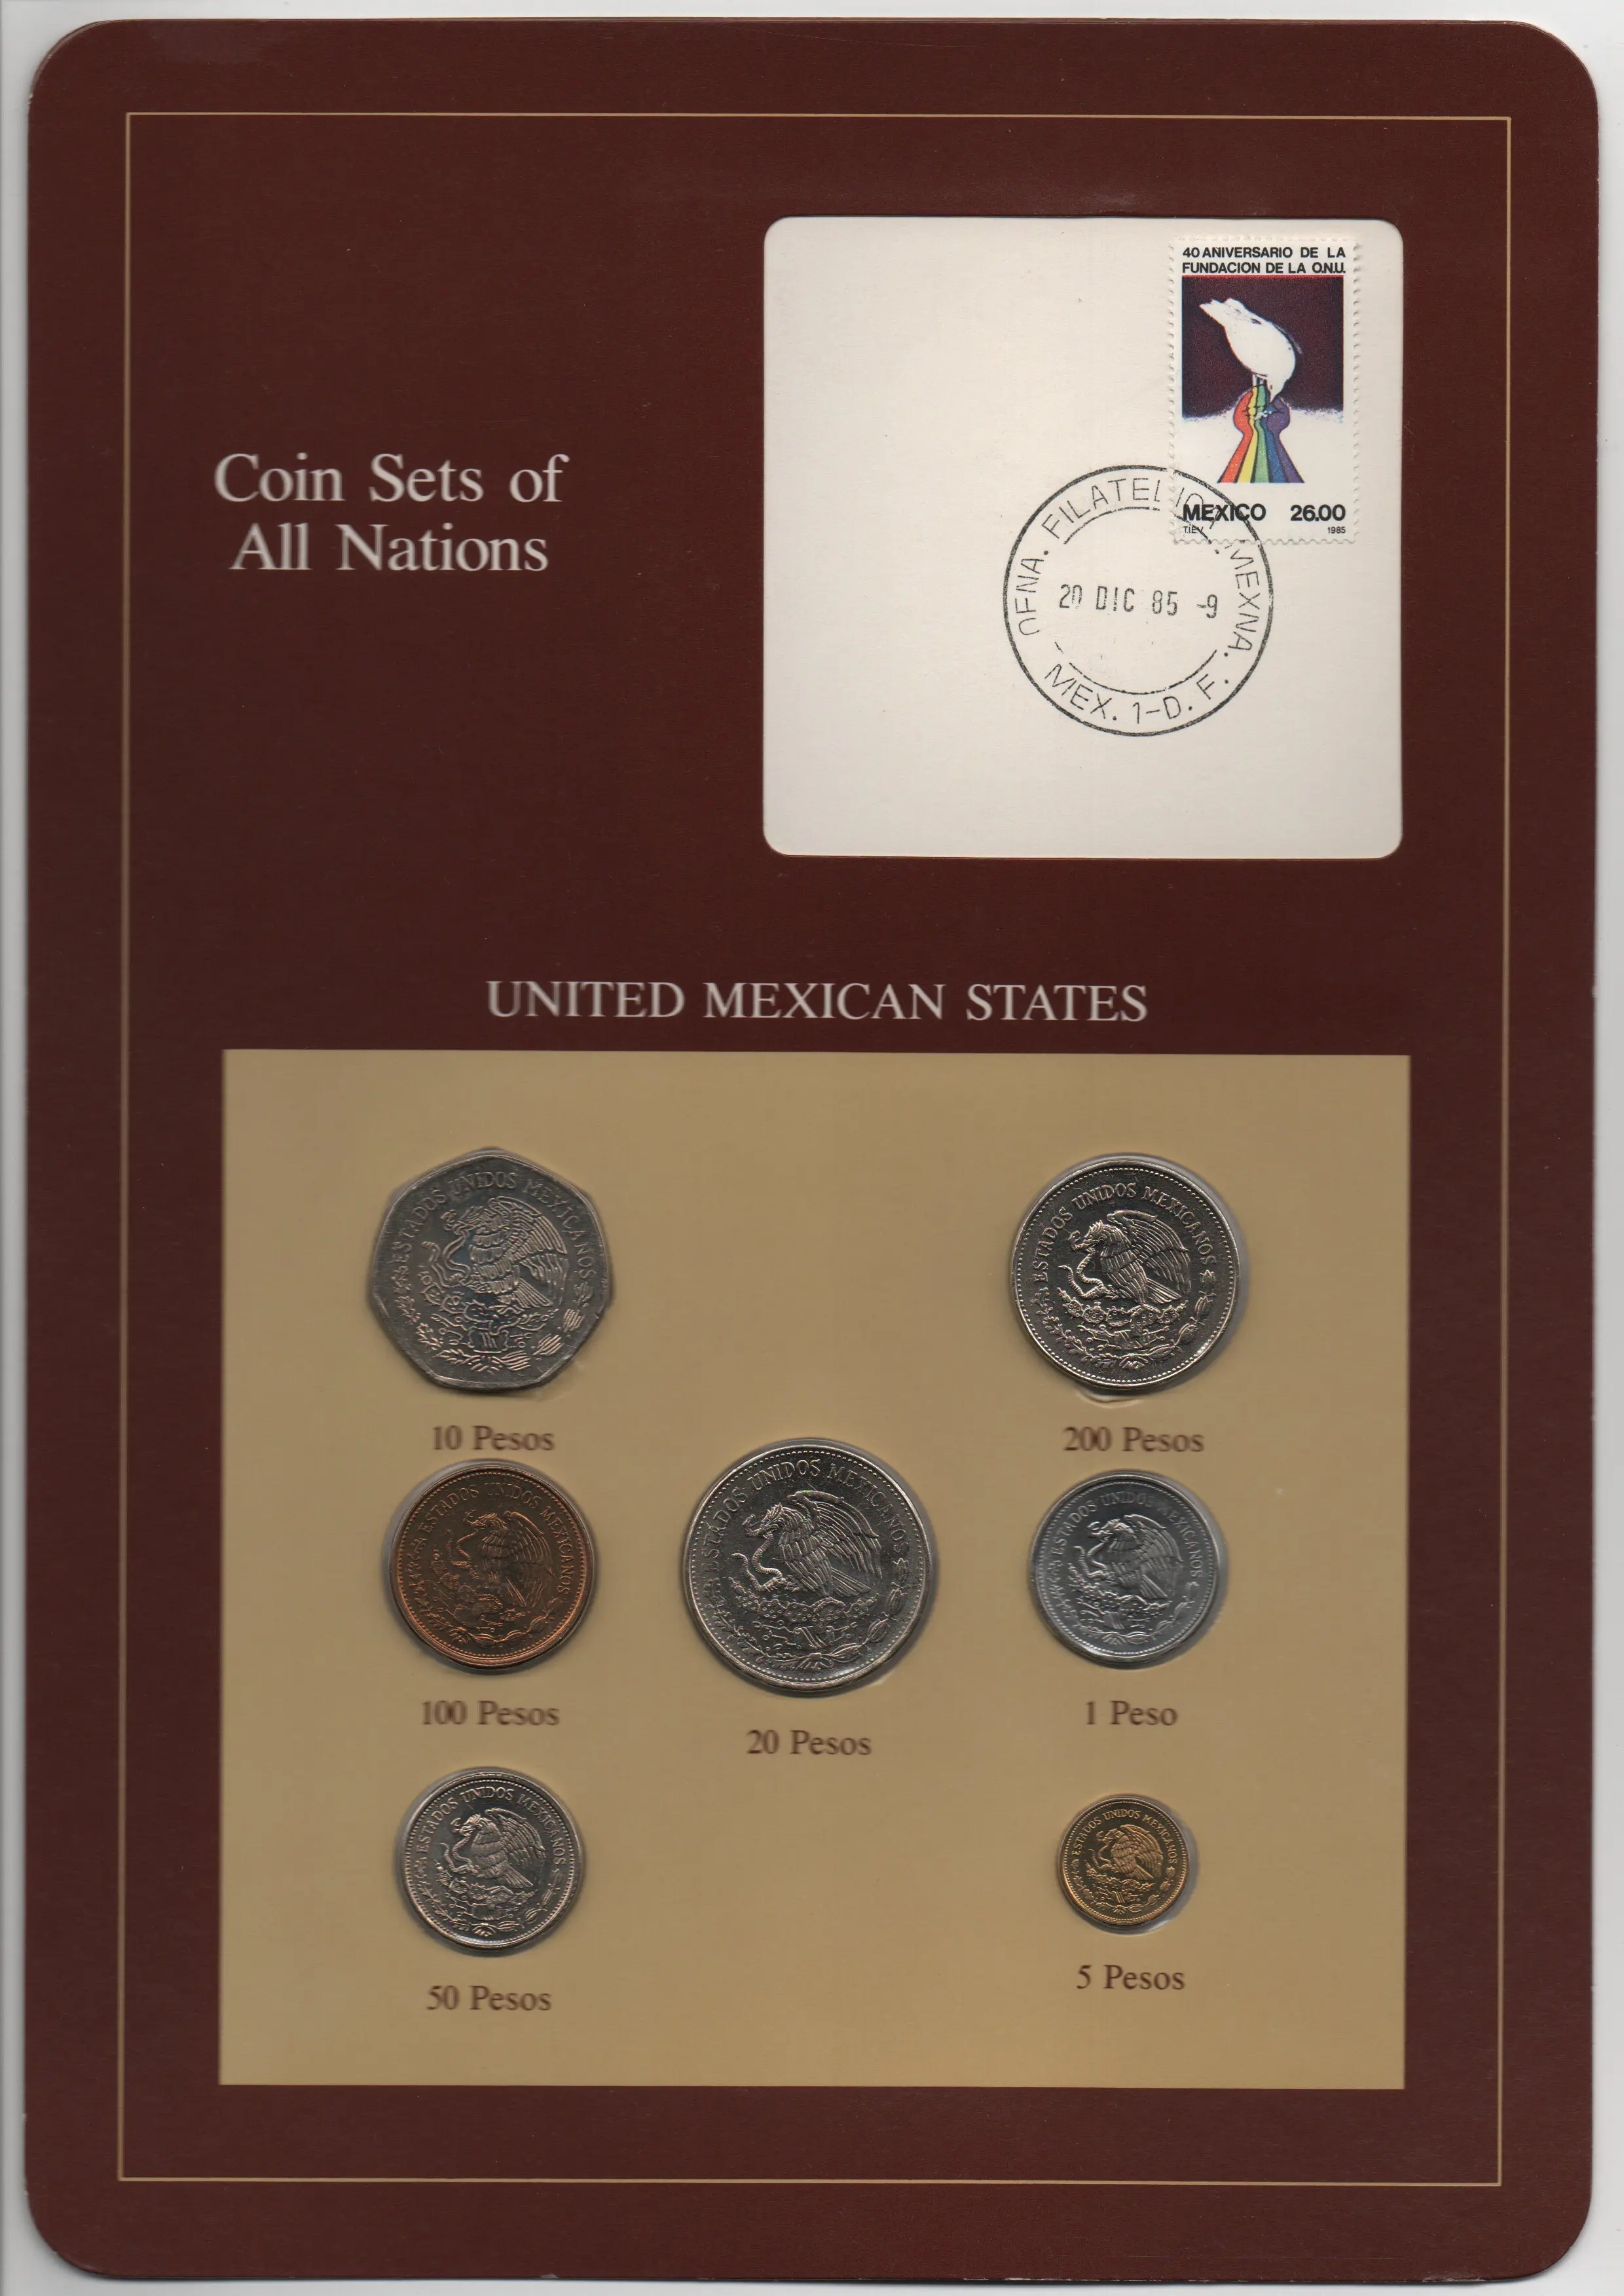 Франклин Почтовая печать Мексика 1984-1985 Монеты 7 штук набор монет по 1-200 песо 100% Оригинал